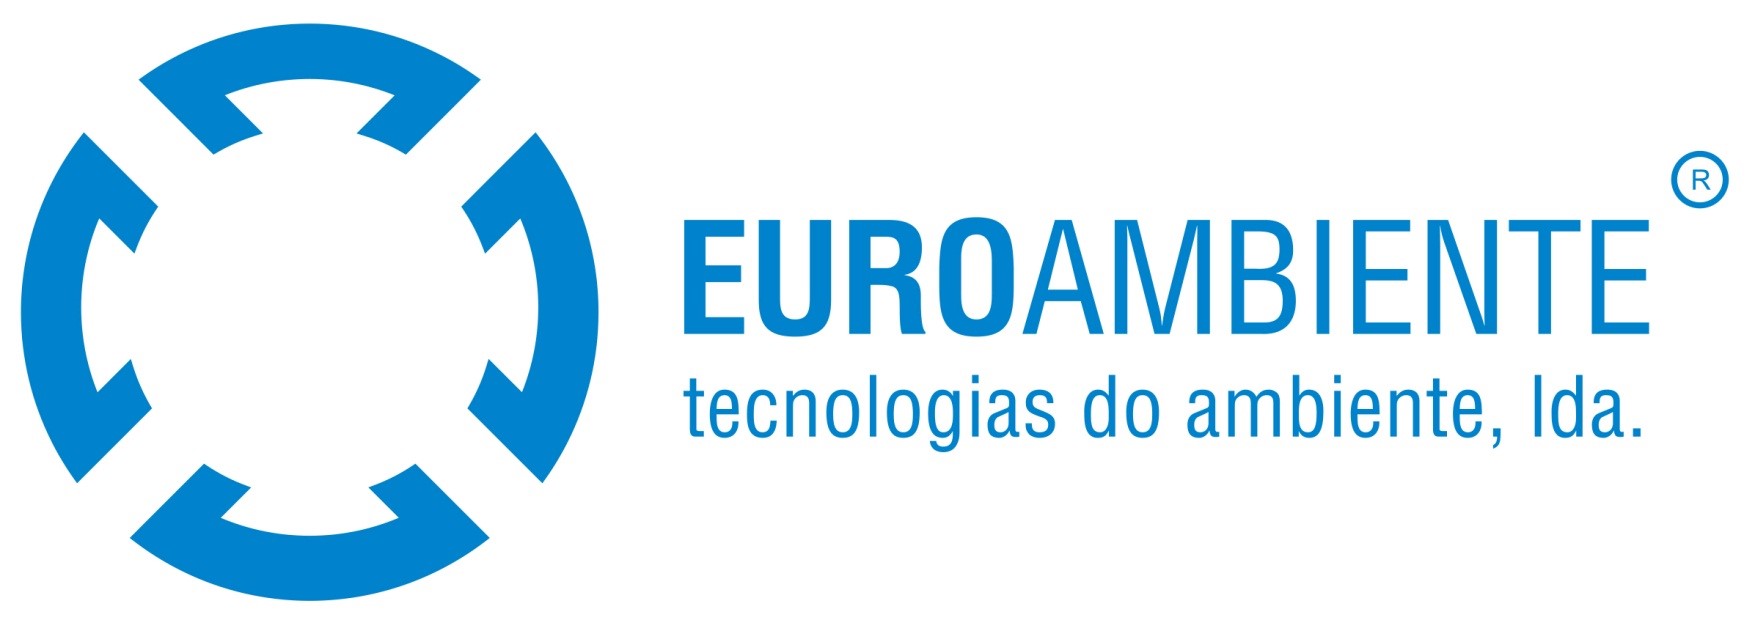 EuroAmbiente – Tecnologias do ambiente